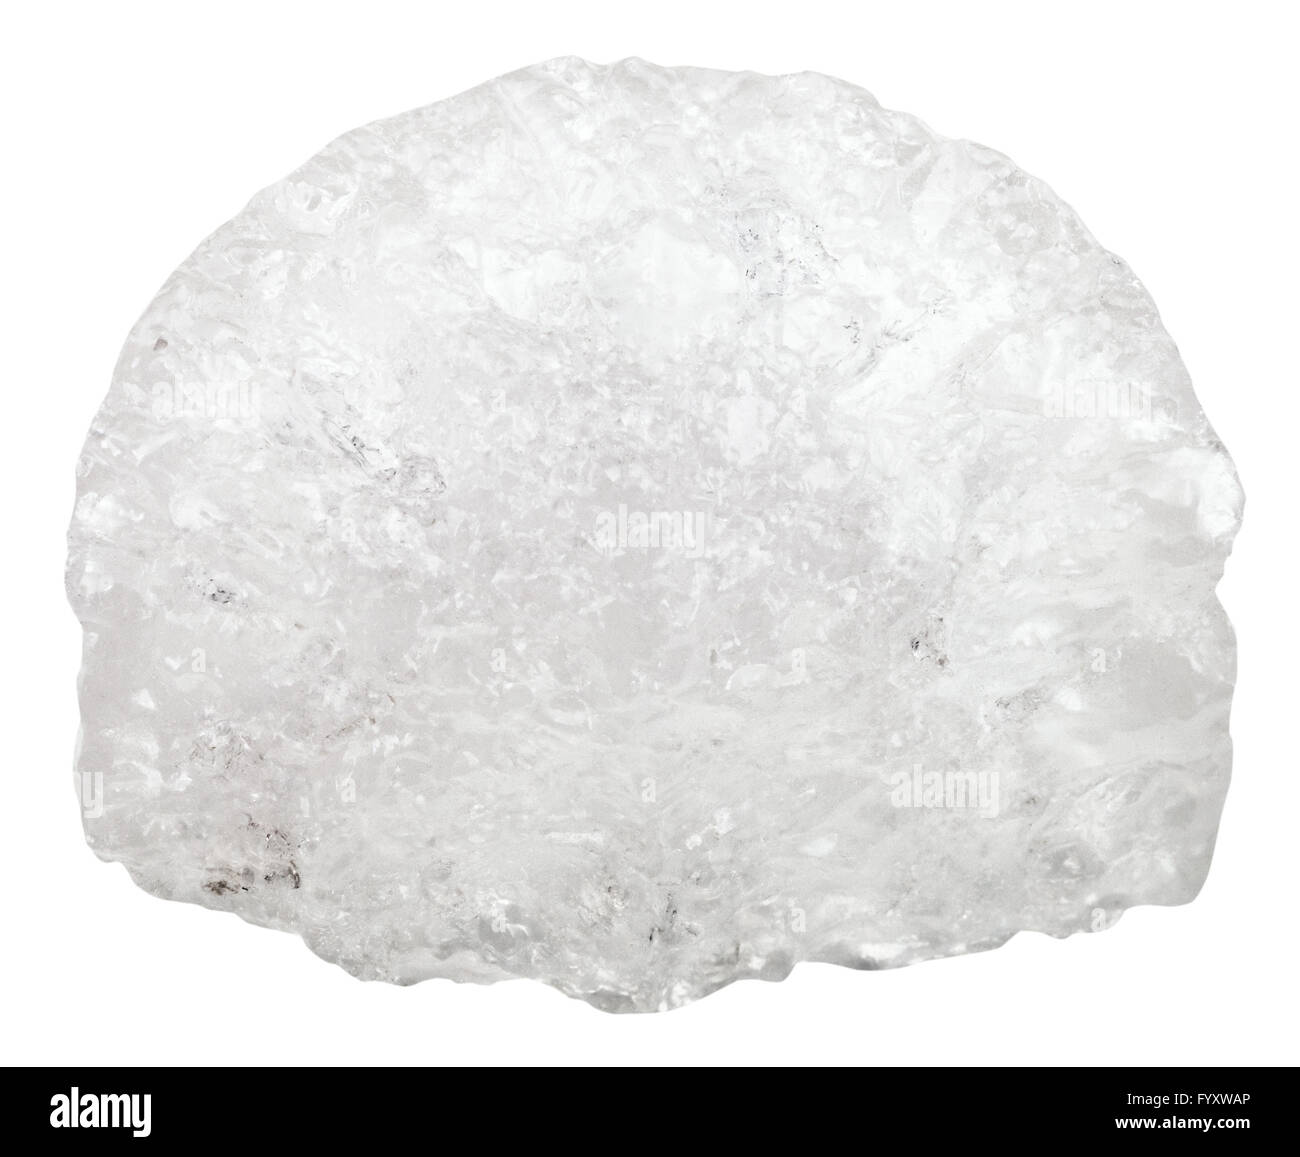 La prise de vue macro des pierres minérales naturelles d'Ammonium - le sulfate d'aluminium (alun d'ammonium, de l'alun) Pierre cristalline isolated on white b Banque D'Images